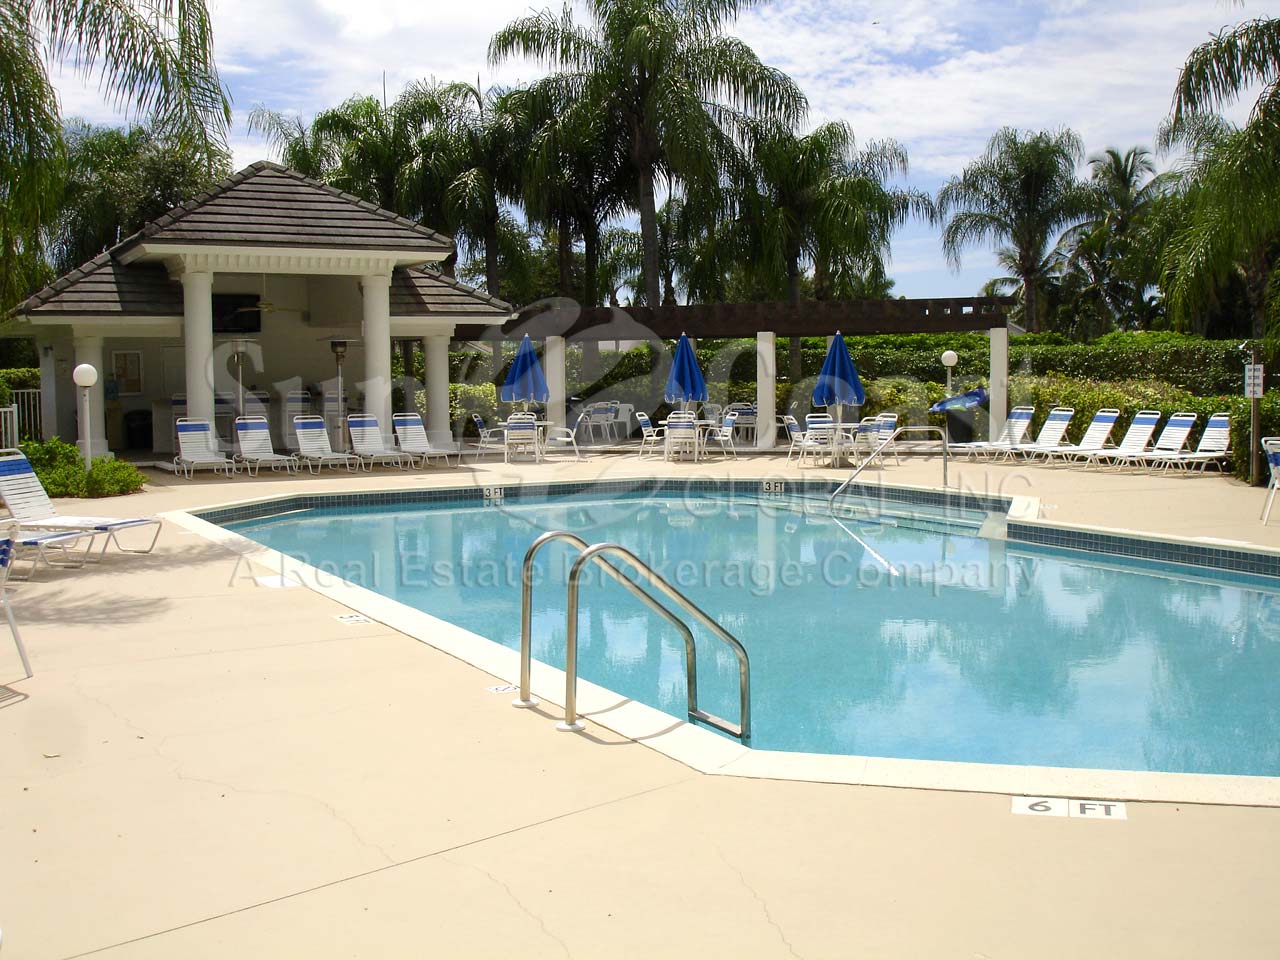 Twelve Oaks community pool